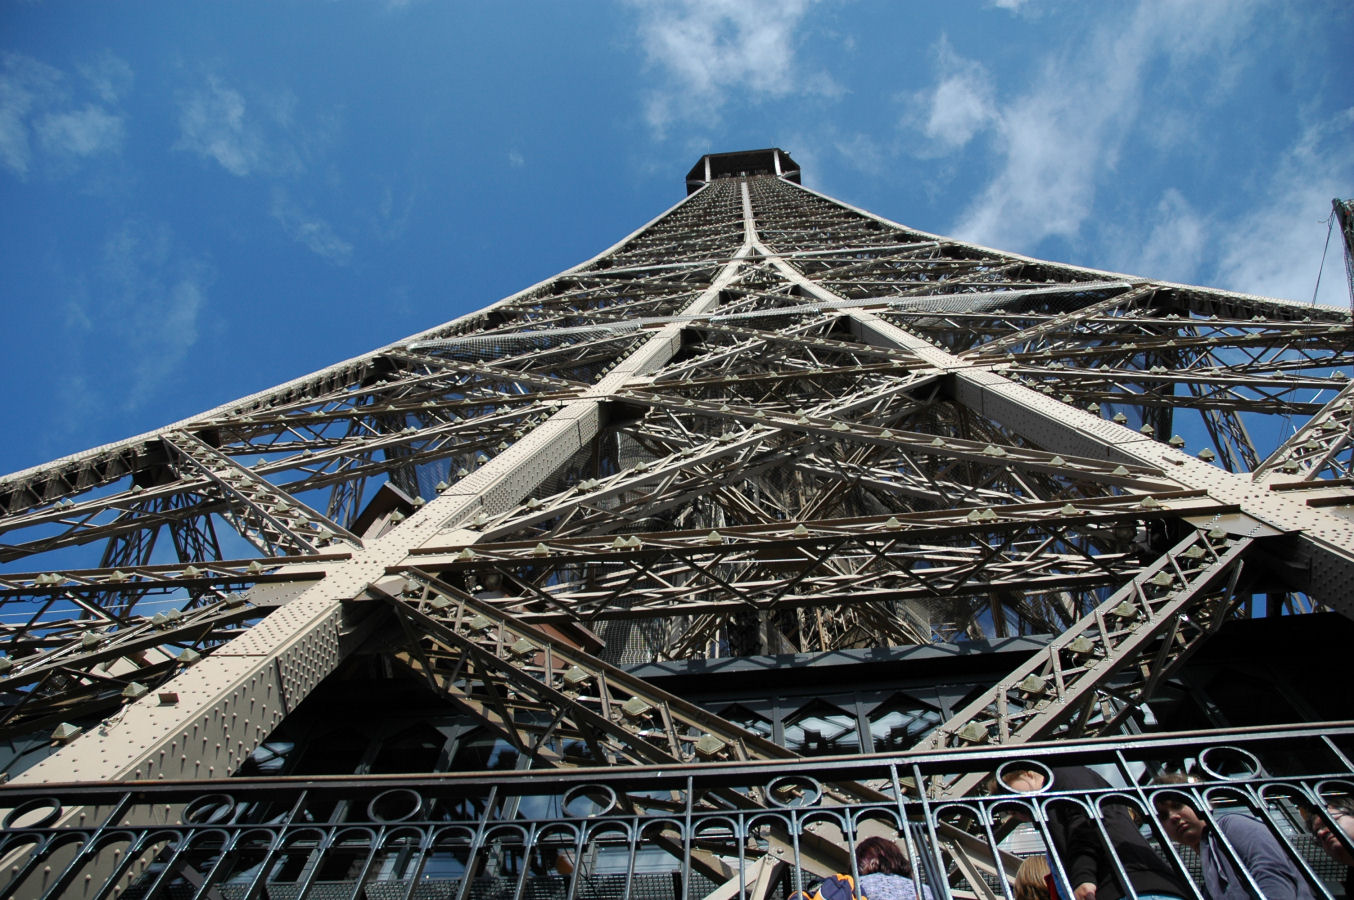 Wieża Eiffla - Francja, Paryż